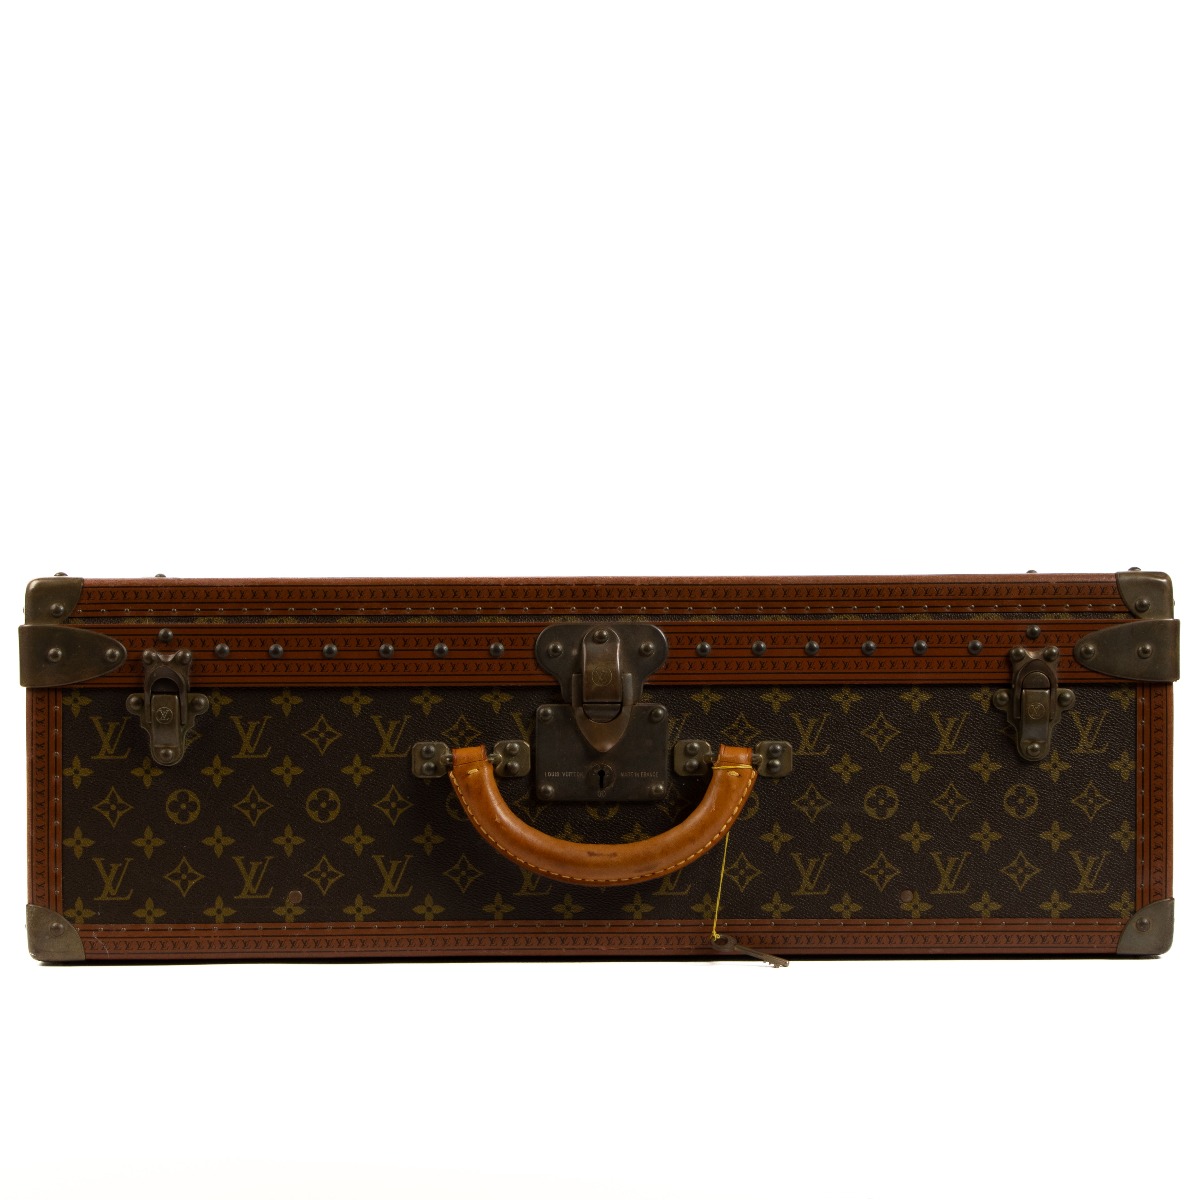 Louis Vuitton Alzer 65 M21227 Monogram Trunk Hard Case Handbag Luggage Bag  Brown